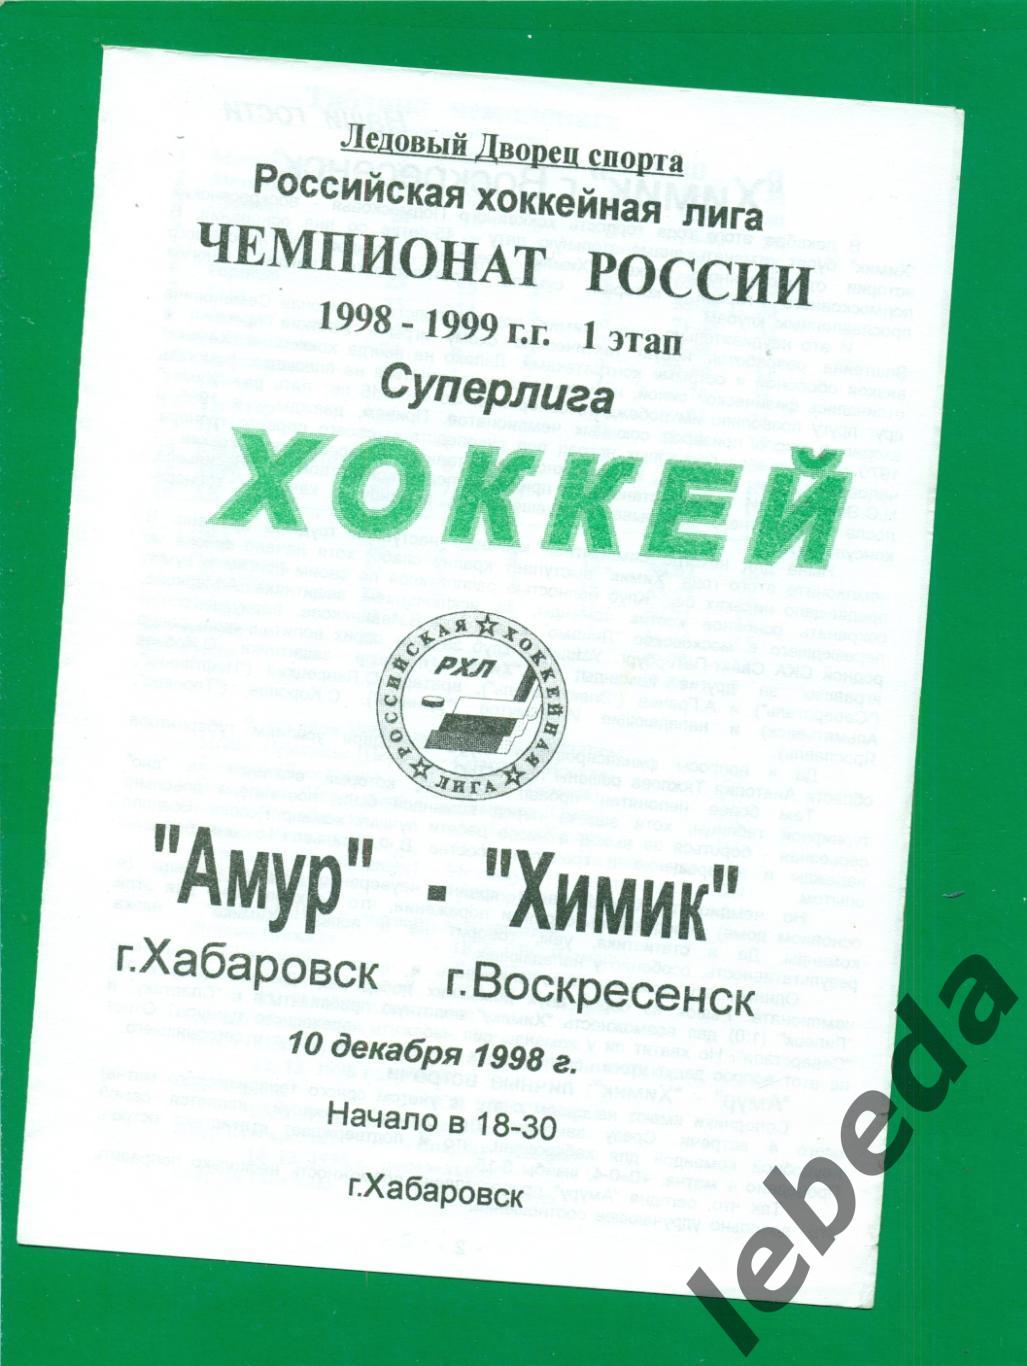 Амур Хабаровск - Химик Воскресенск - 1998 / 1999 г. (10.12.1998.)